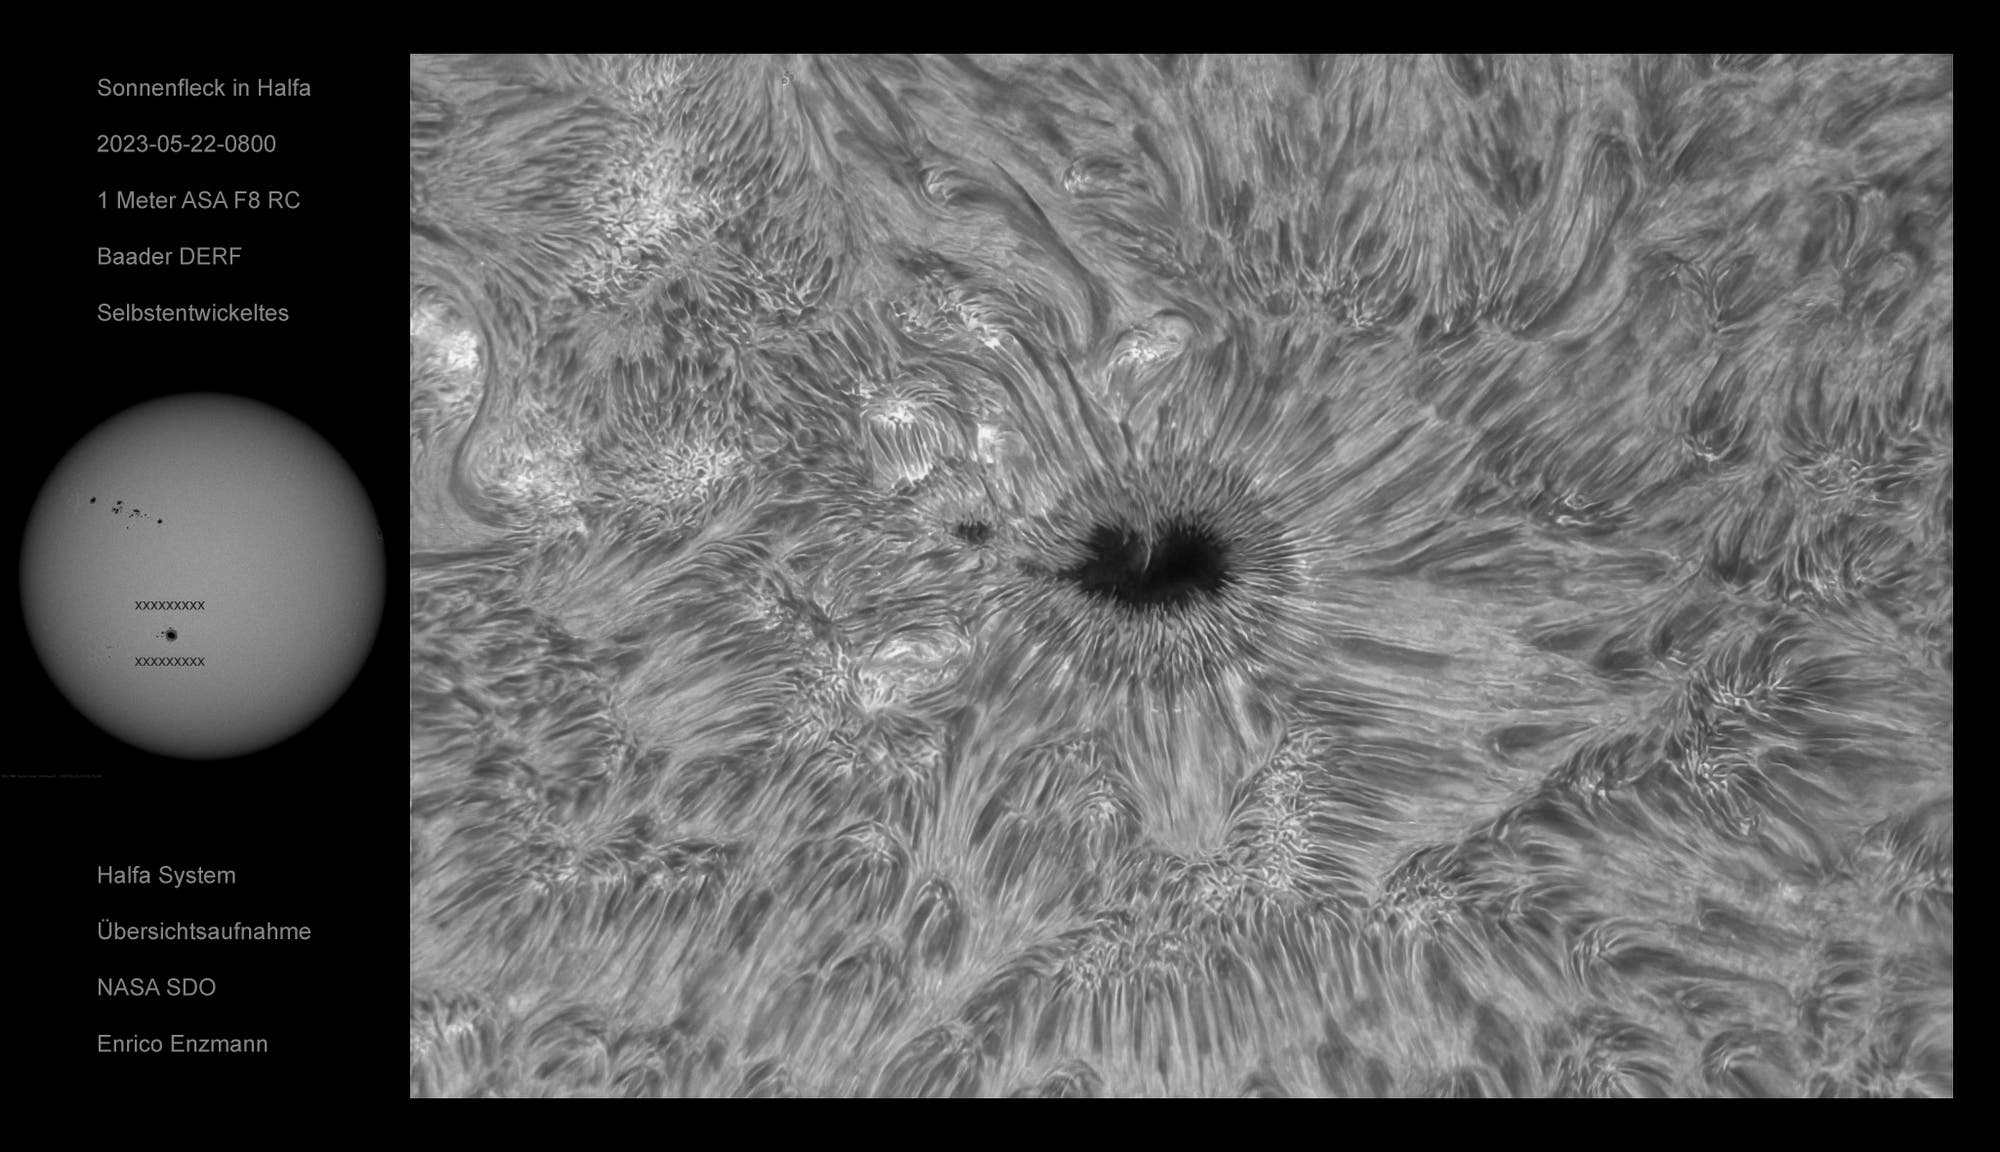 Detailreicher Sonnenfleck in H-Alpha vom 22. Mai 2023